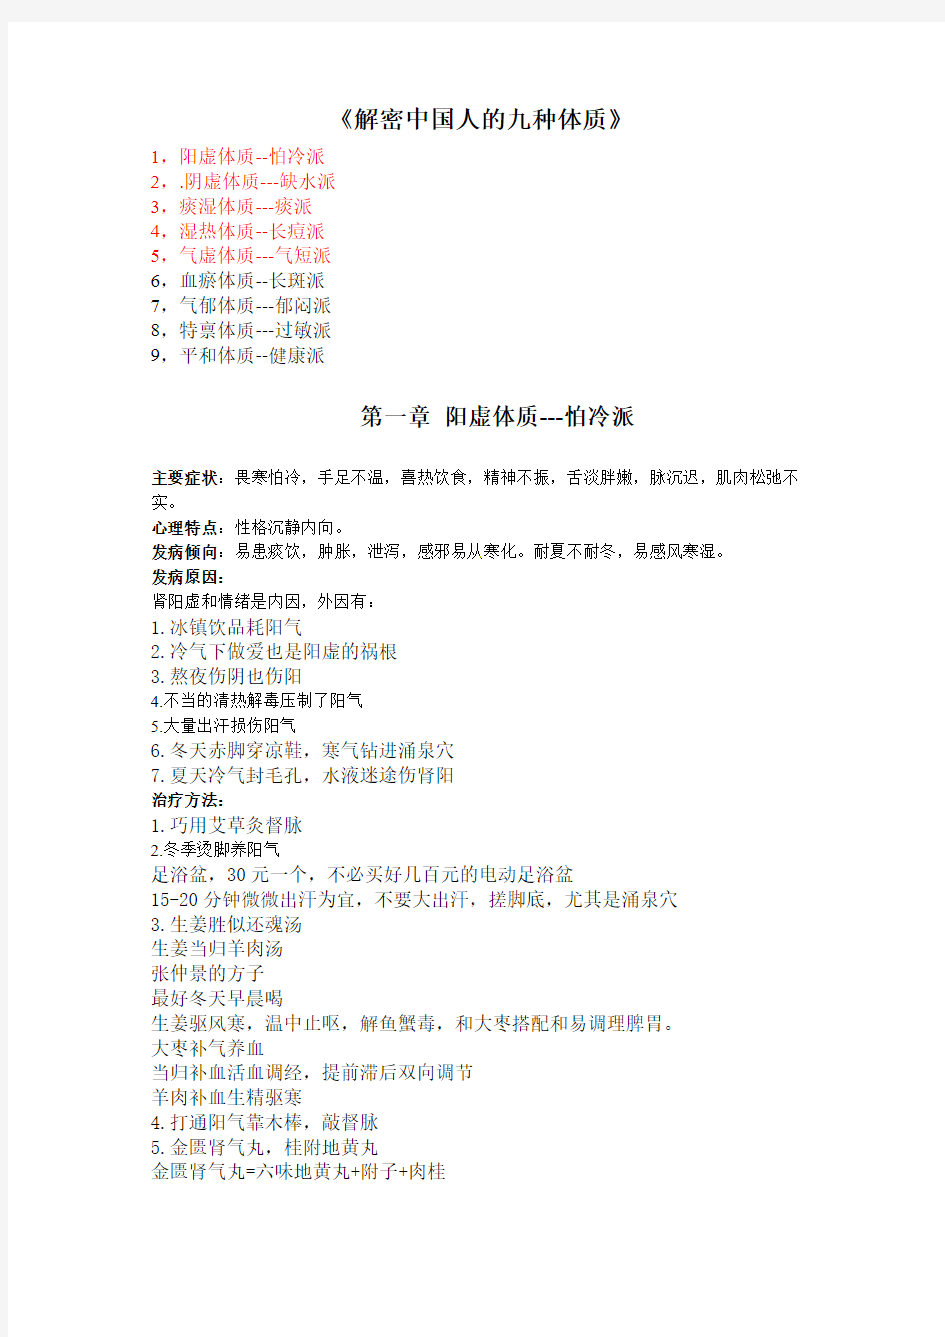 中国人的九种体质-完整版-推荐下载